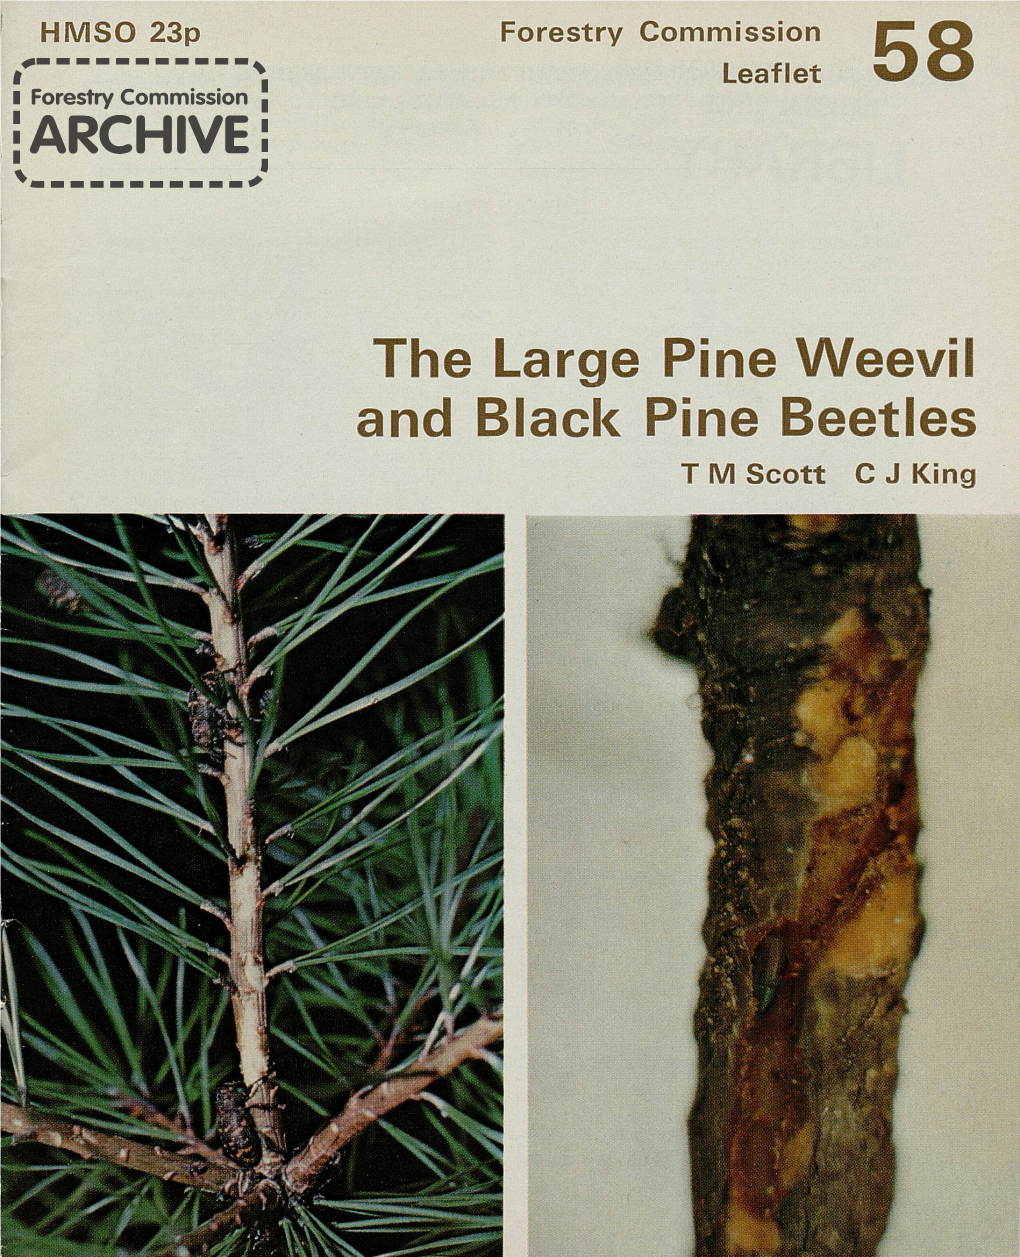 The Large Pine Weevil and Black Pine Beetles